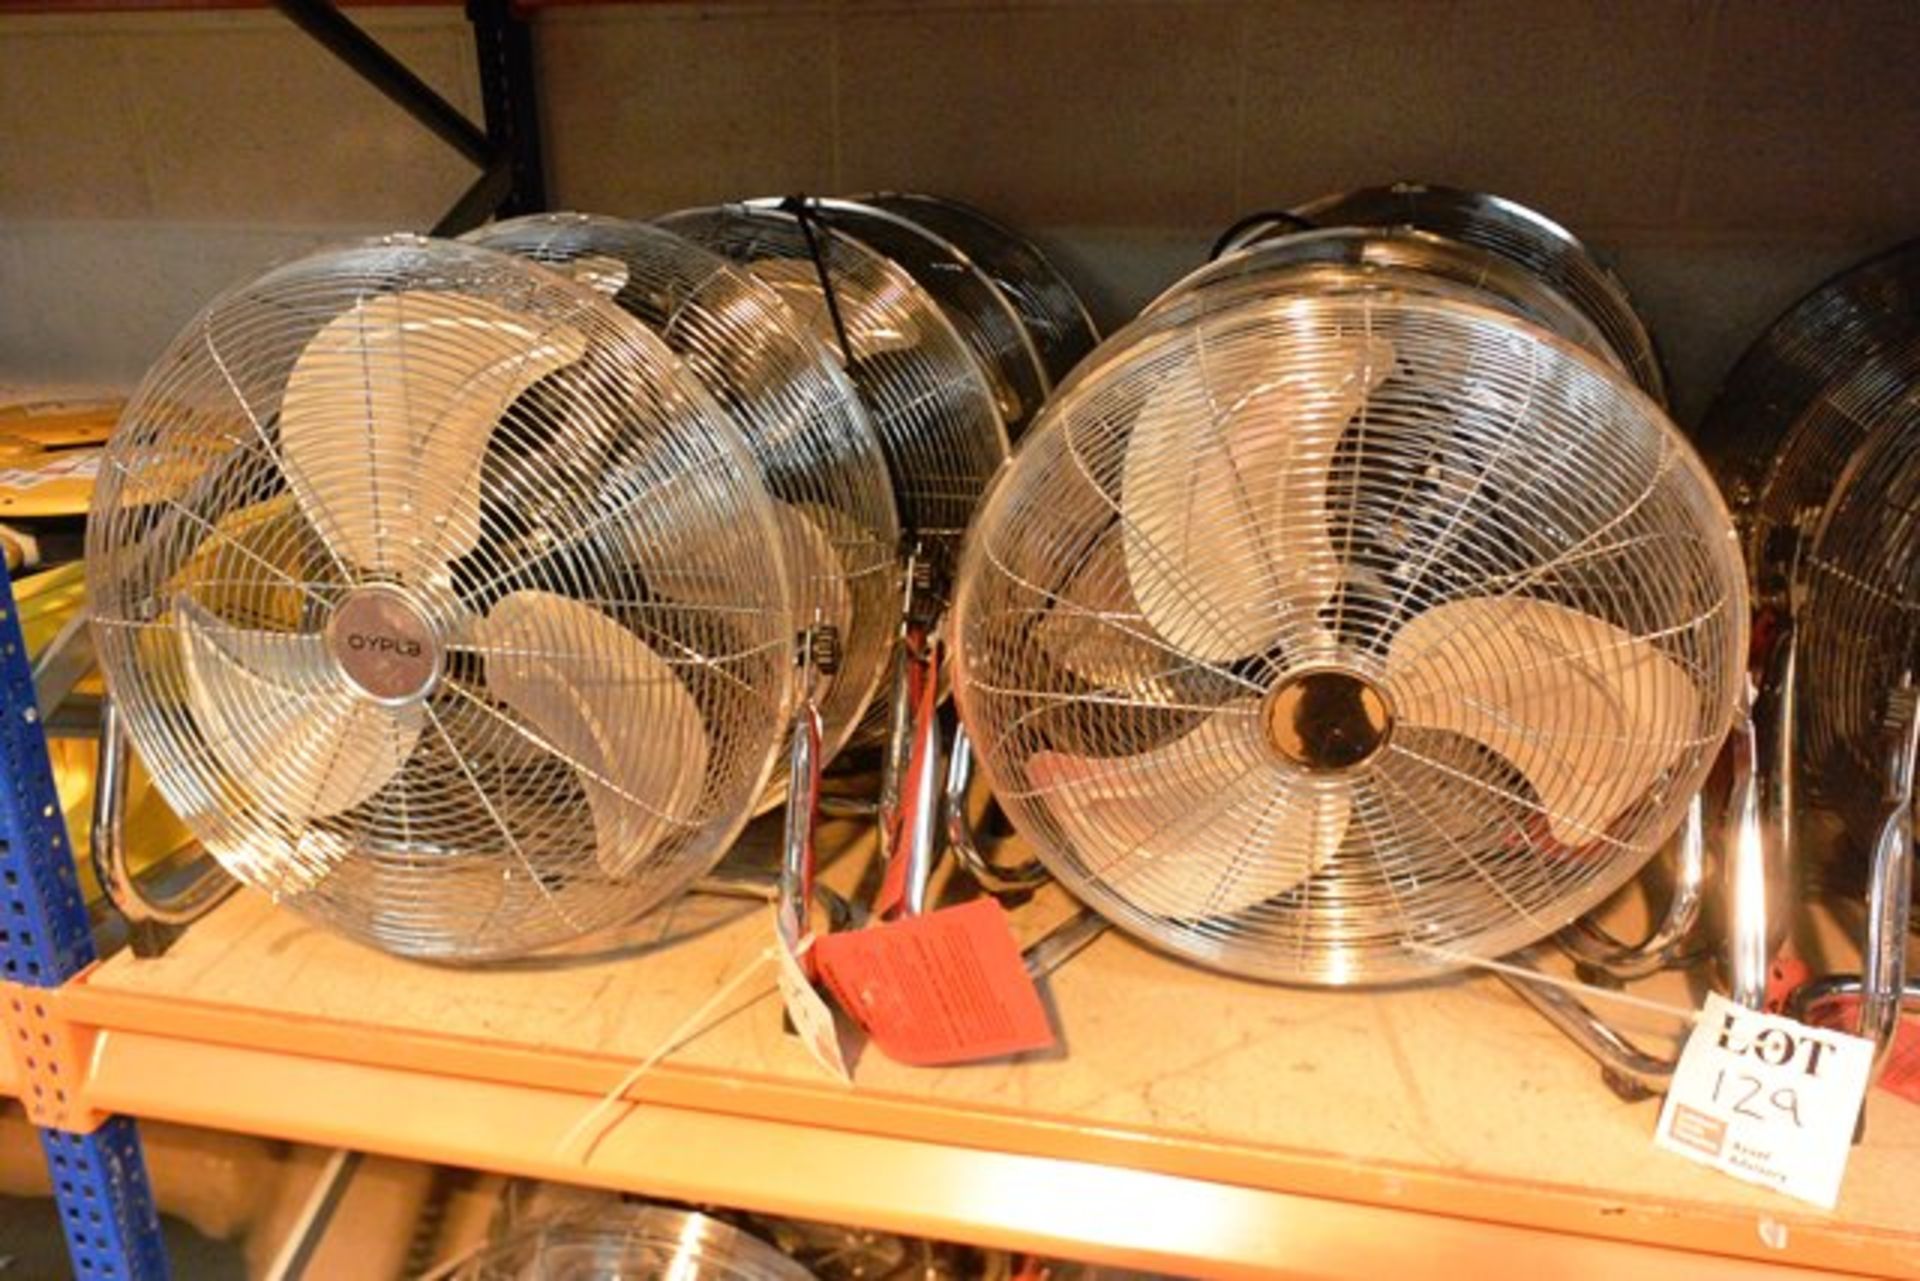 Ten Oypla 240v industrial fans